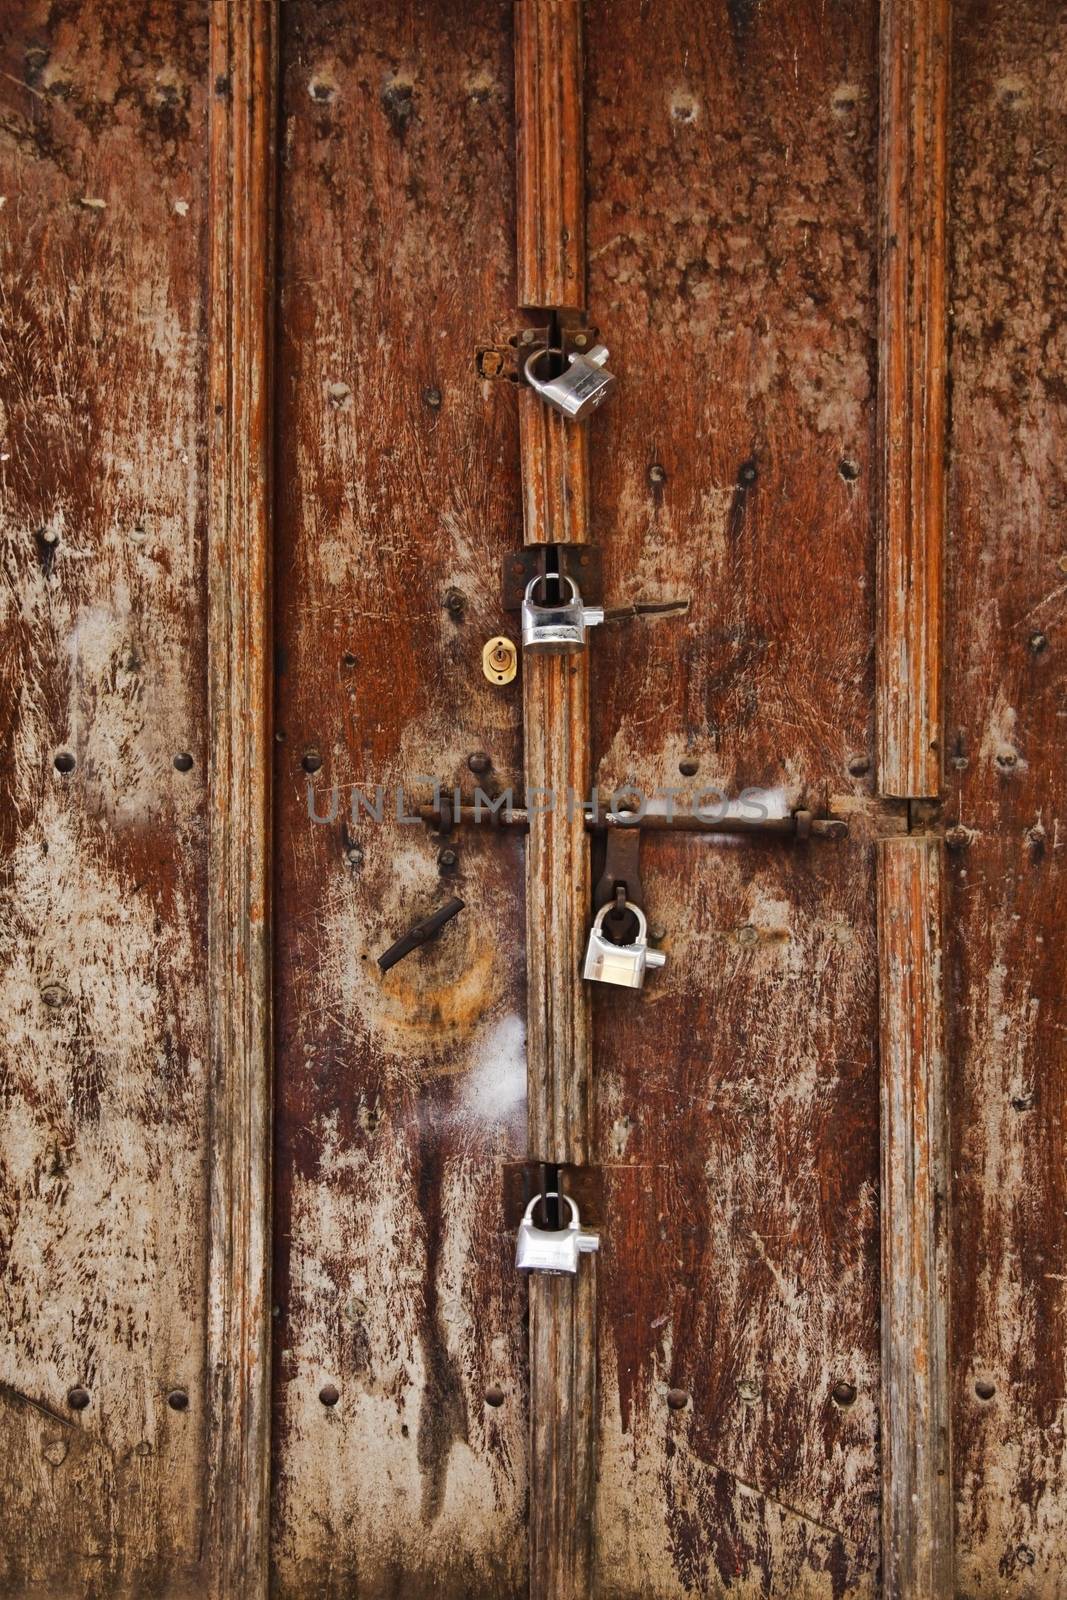 The famous Zanzibar doors in Stone Town, Tanzania by friday